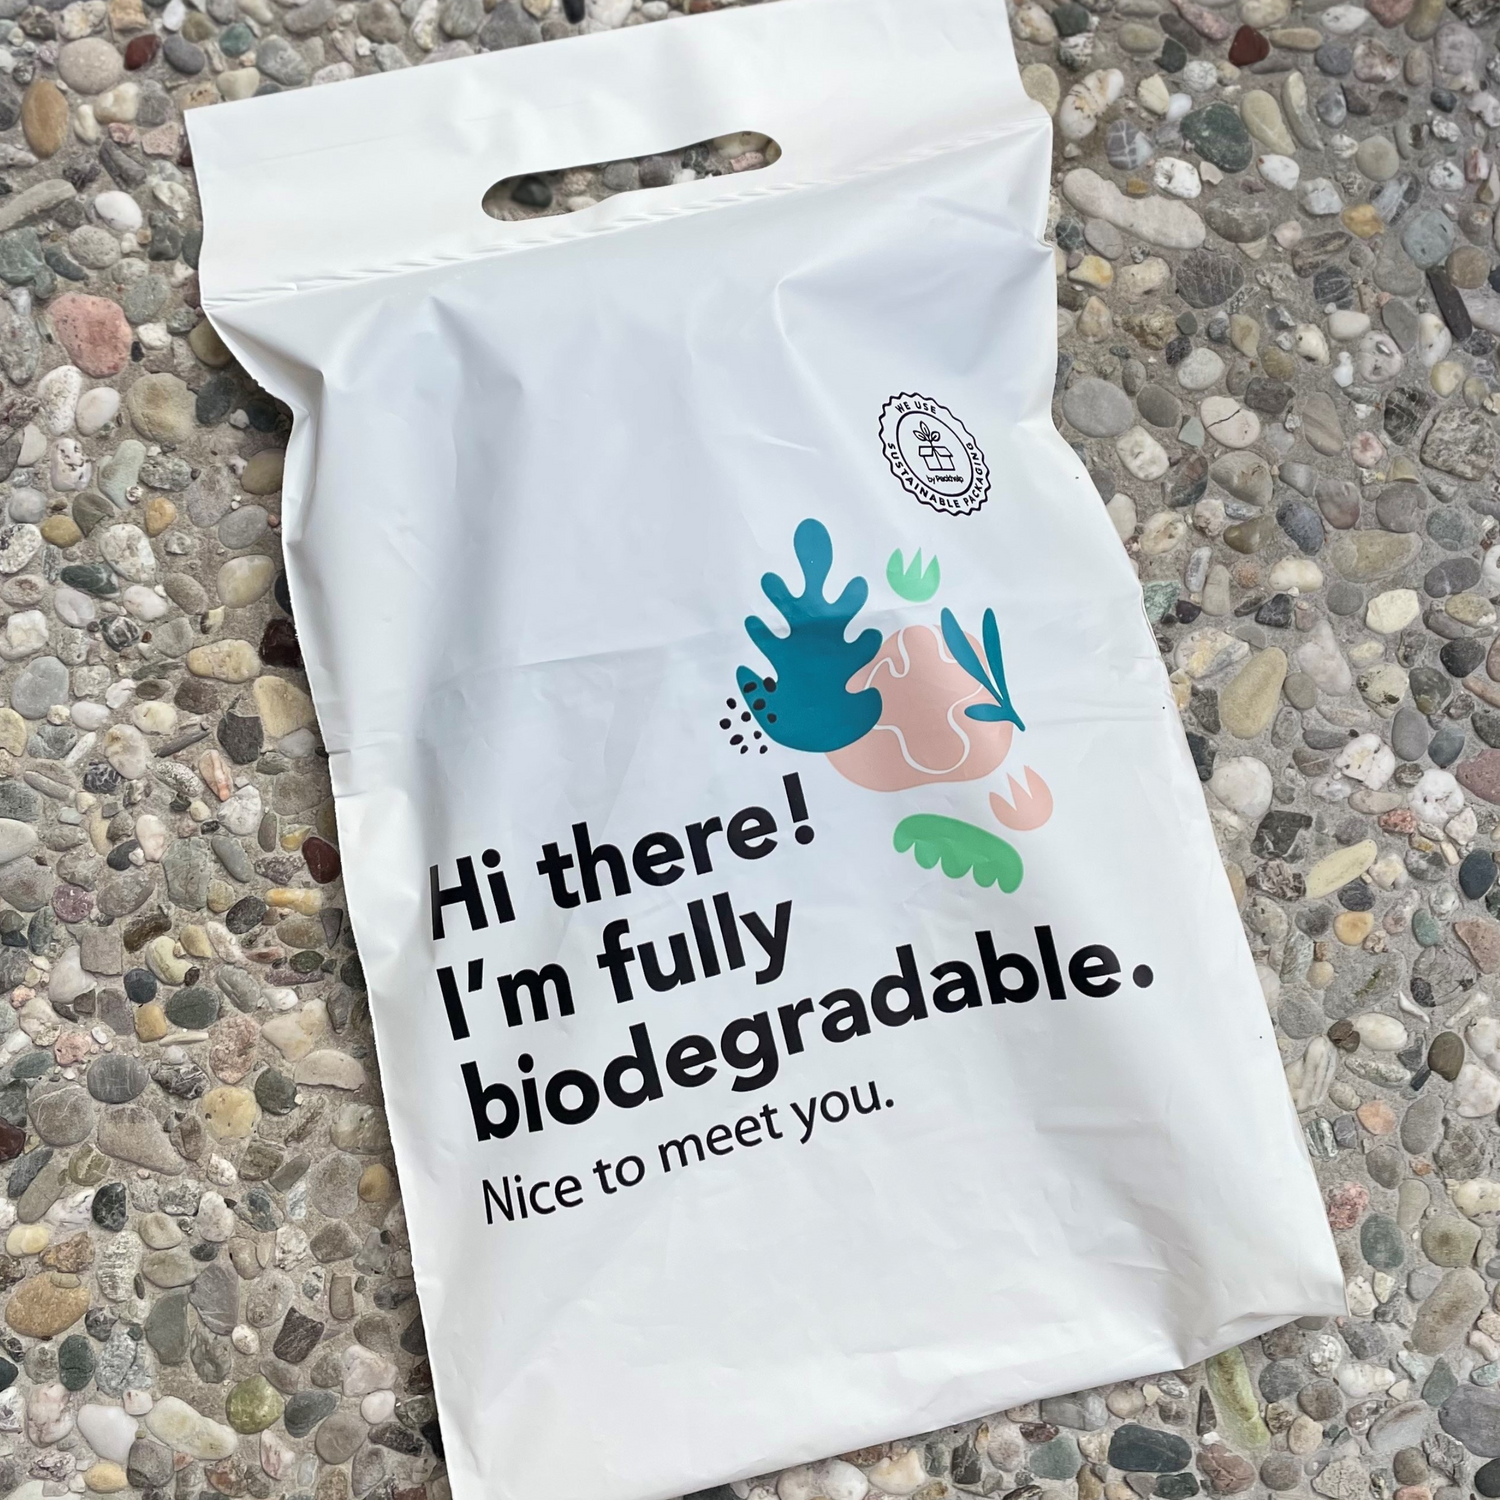 Wir verwenden komplett biologisch abbaubare Versandtüten